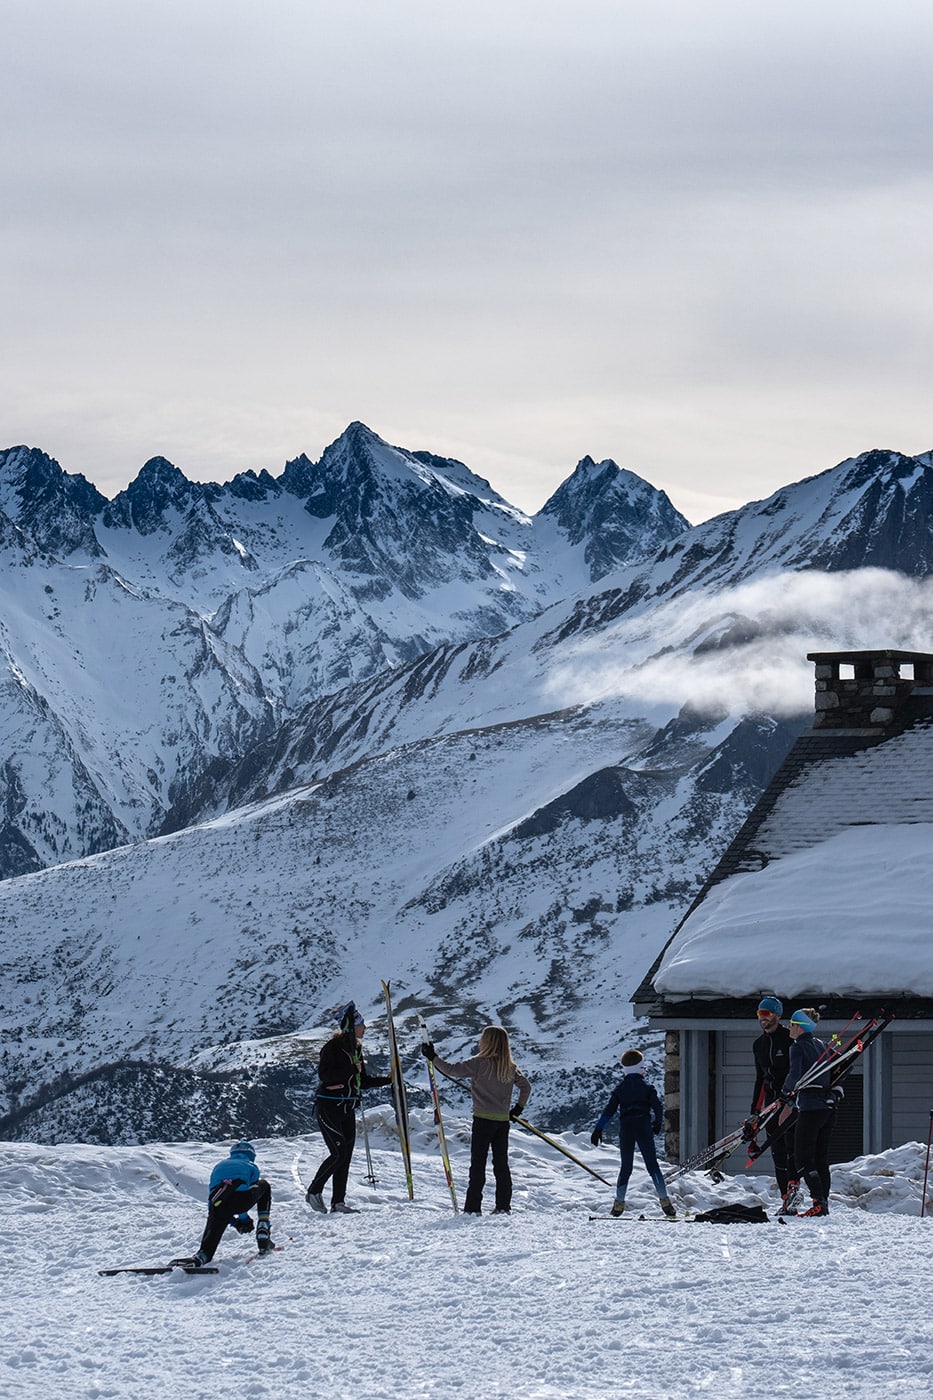 Station de ski nordique du val d'azun au col de couraduque